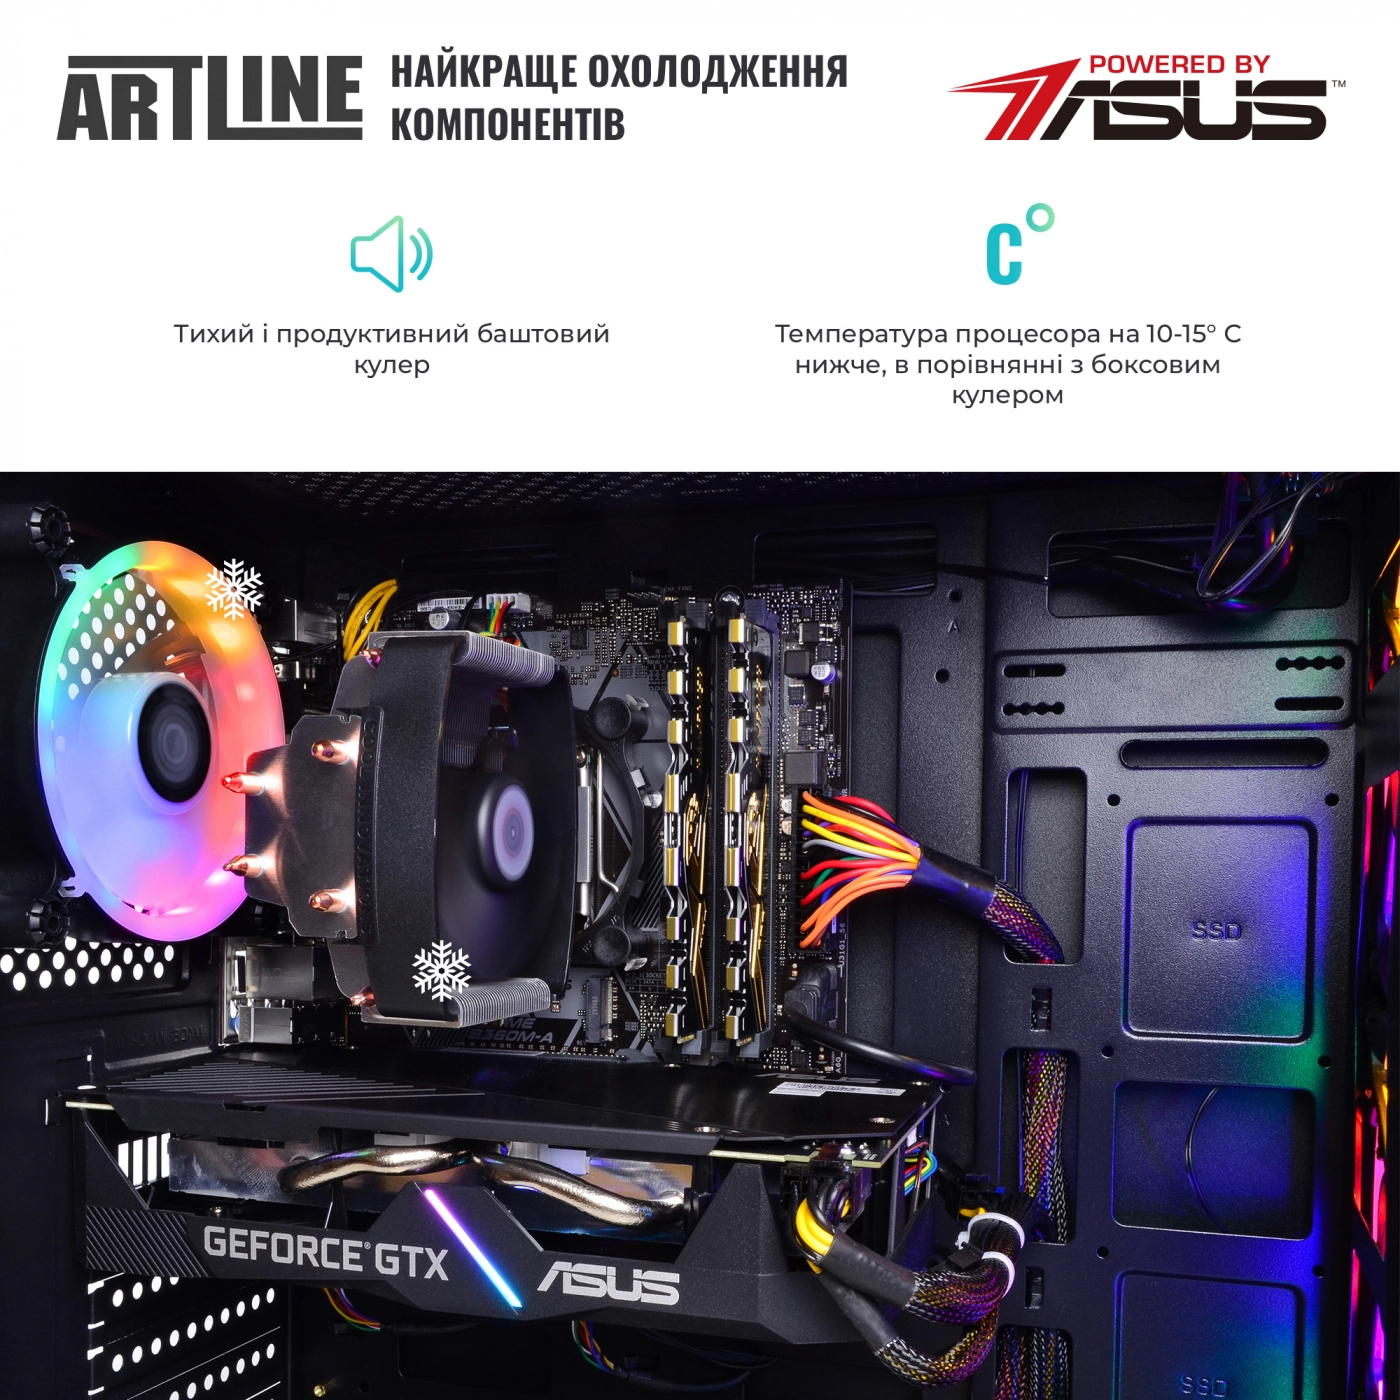 Купить Компьютер ARTLINE Gaming X74v15 - фото 7